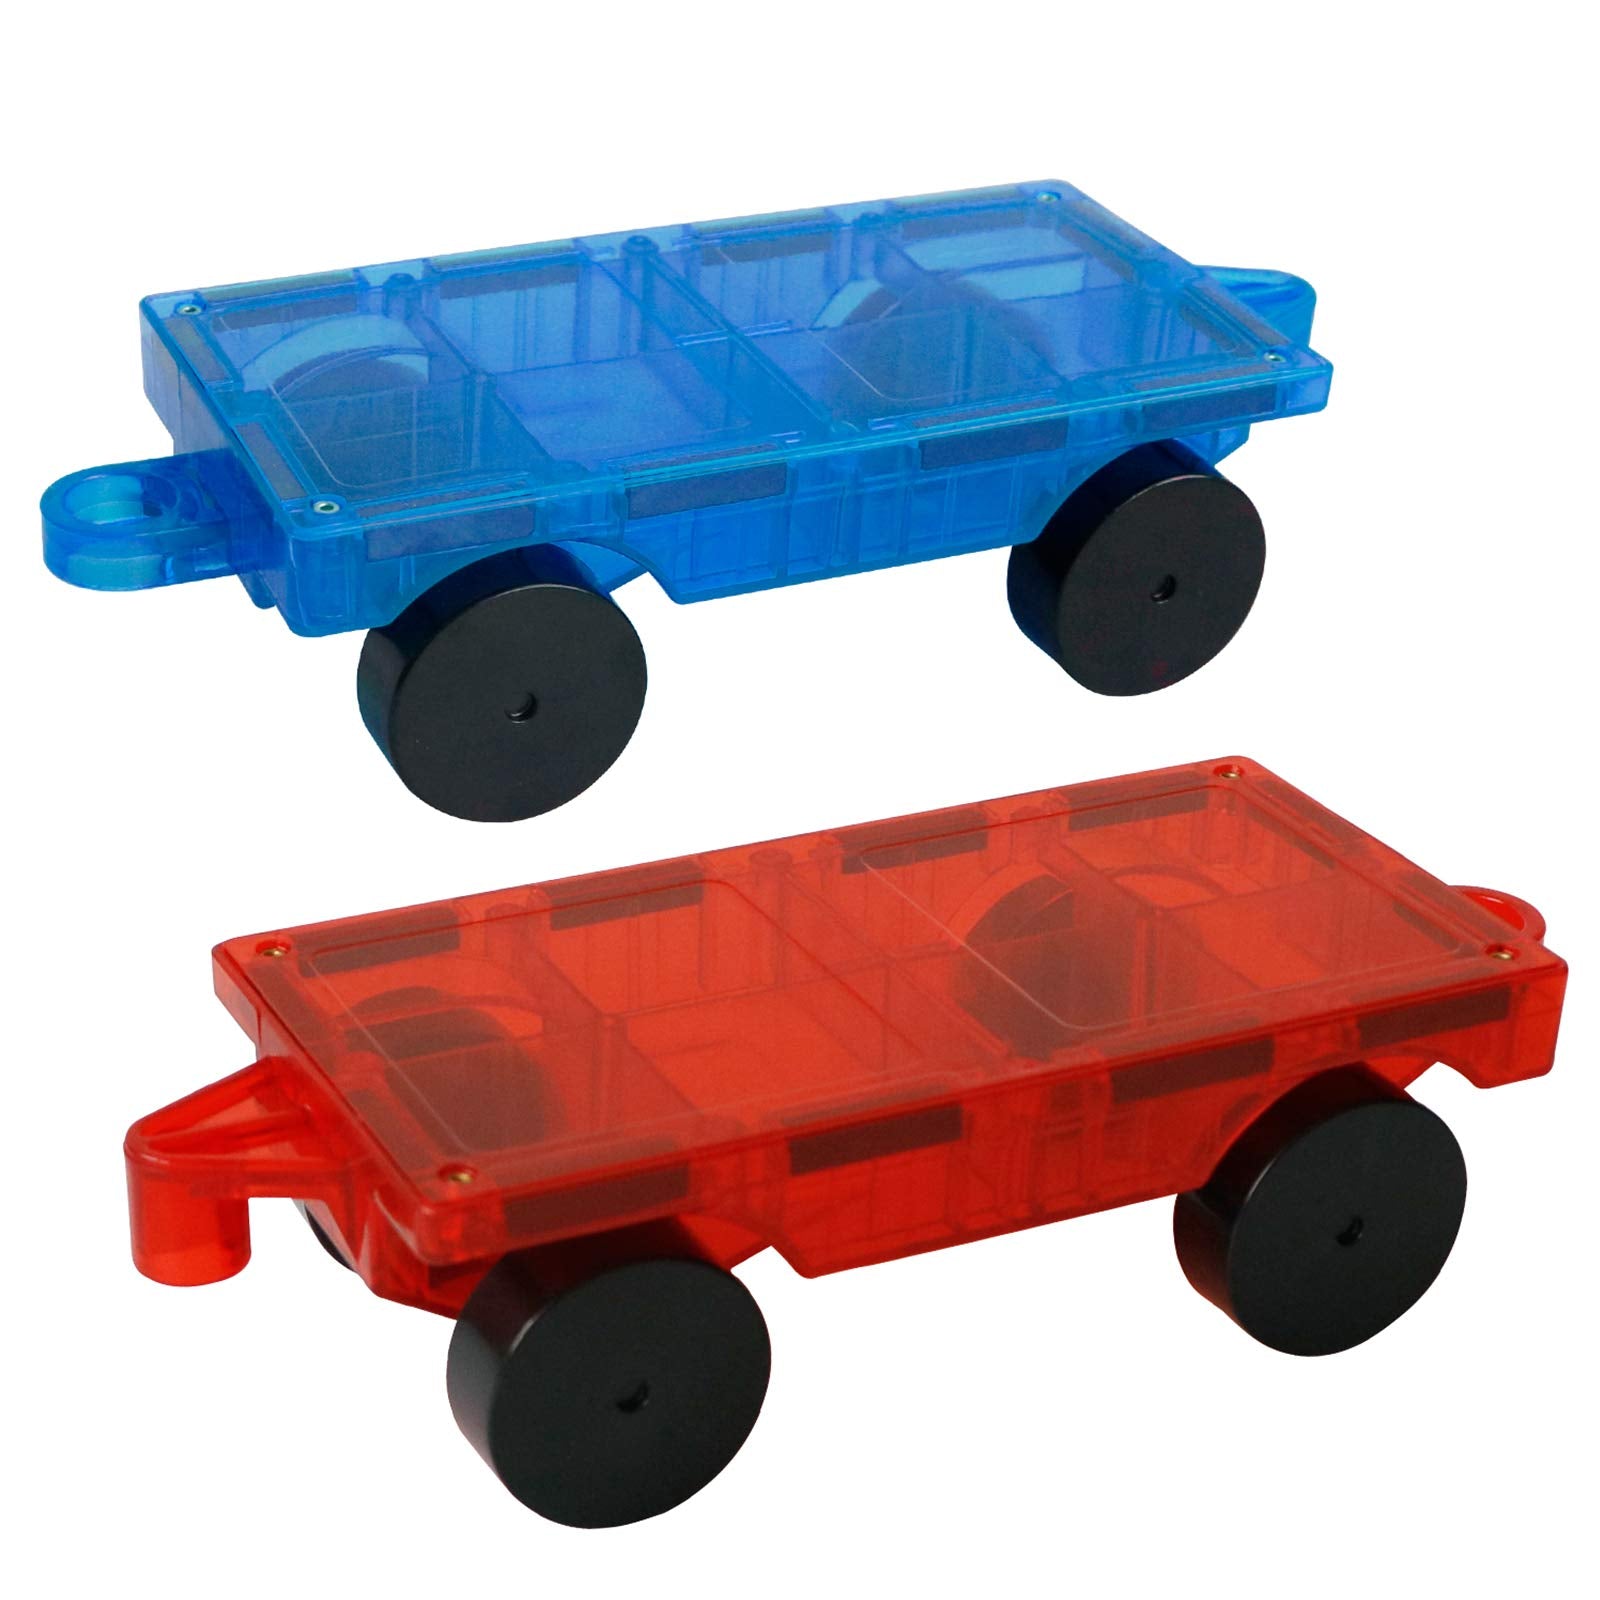 MAGBLOCK Juego de coches de 2 piezas apto para bloques magnéticos y azulejos